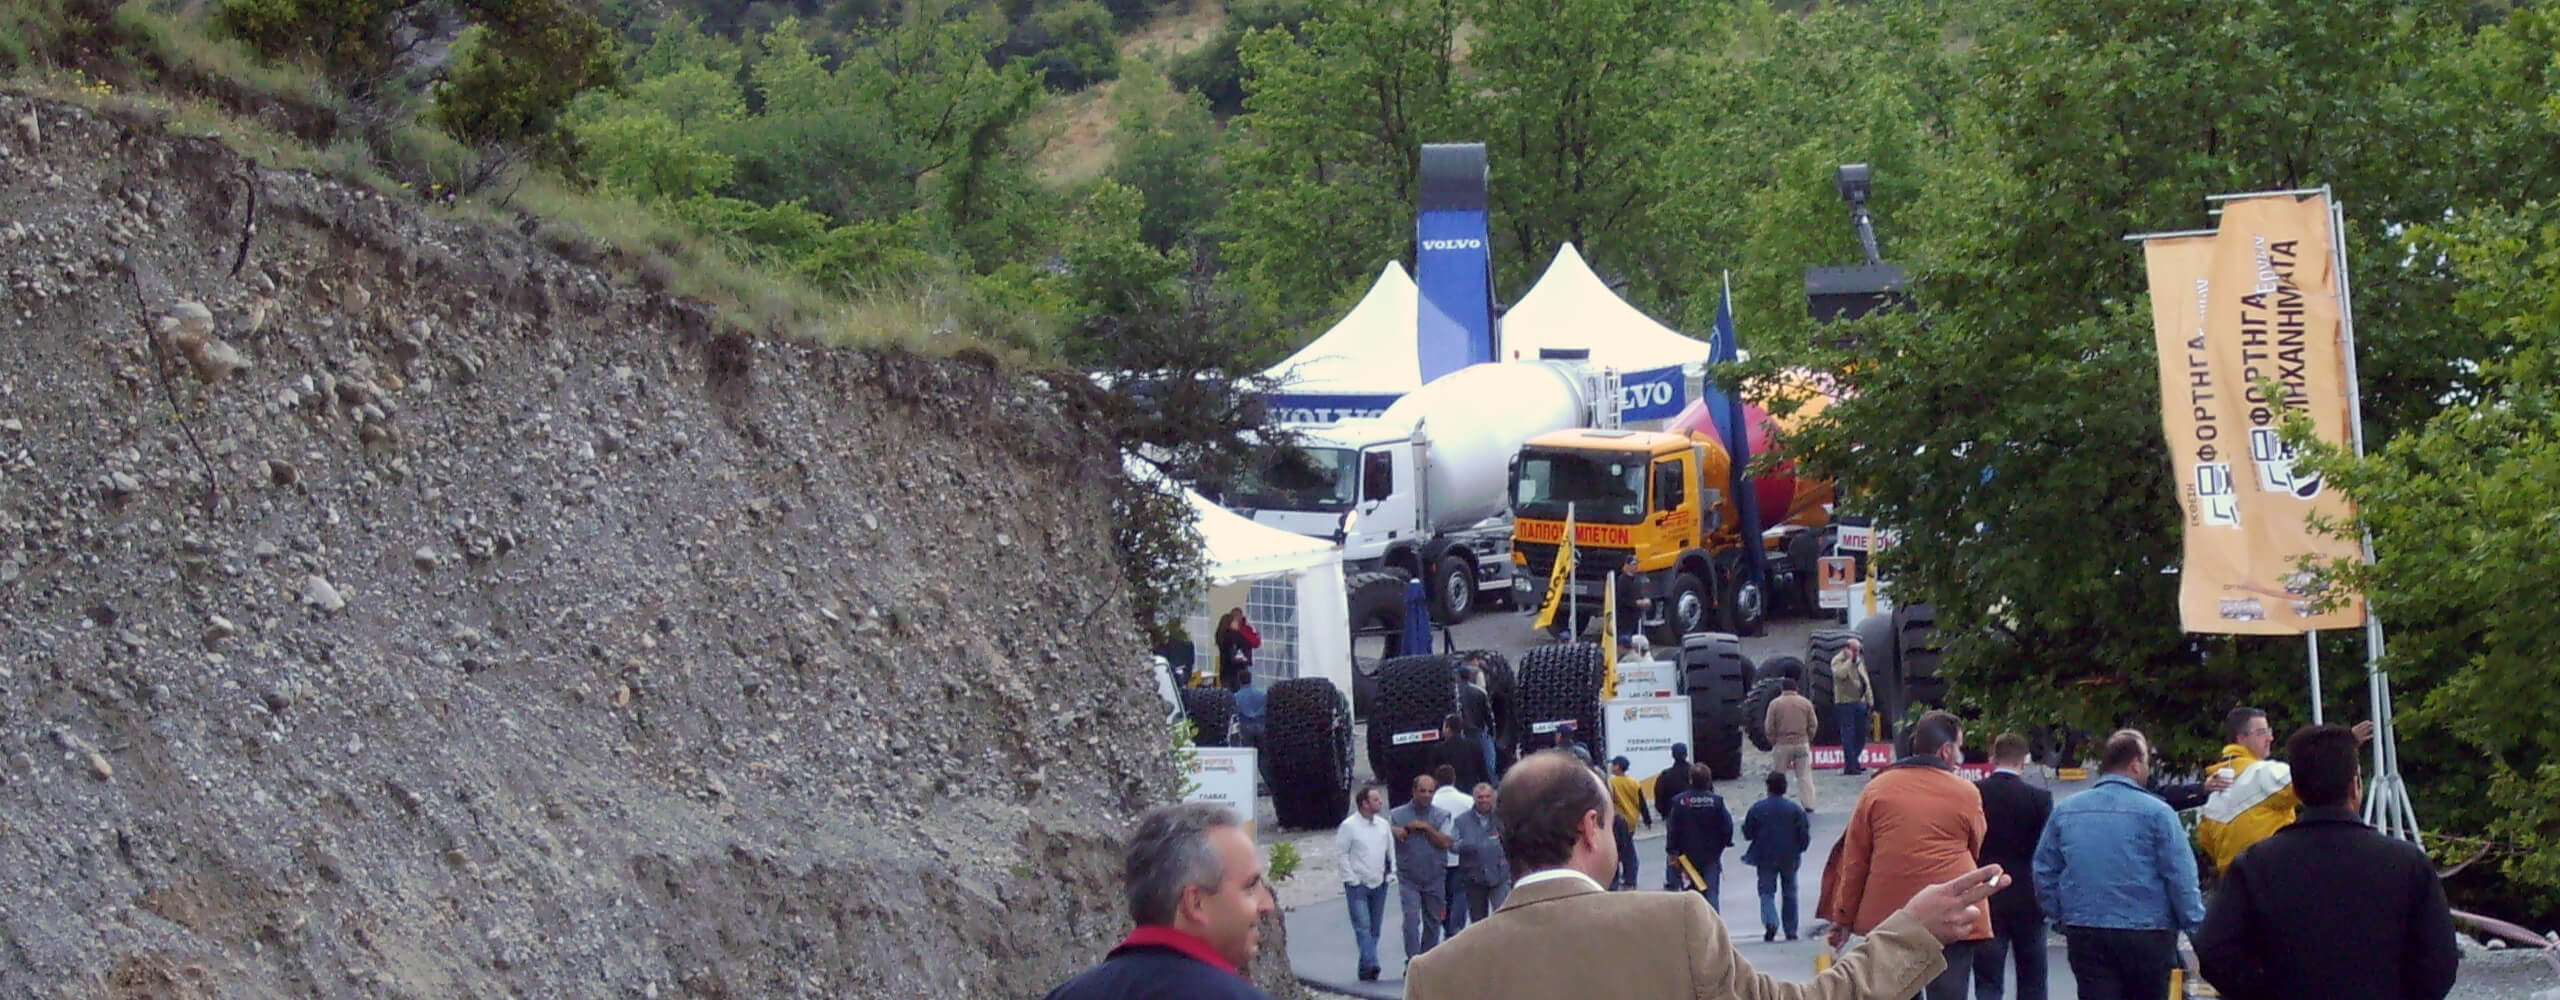 trucks-expo-ekdilosi-endiaferontos